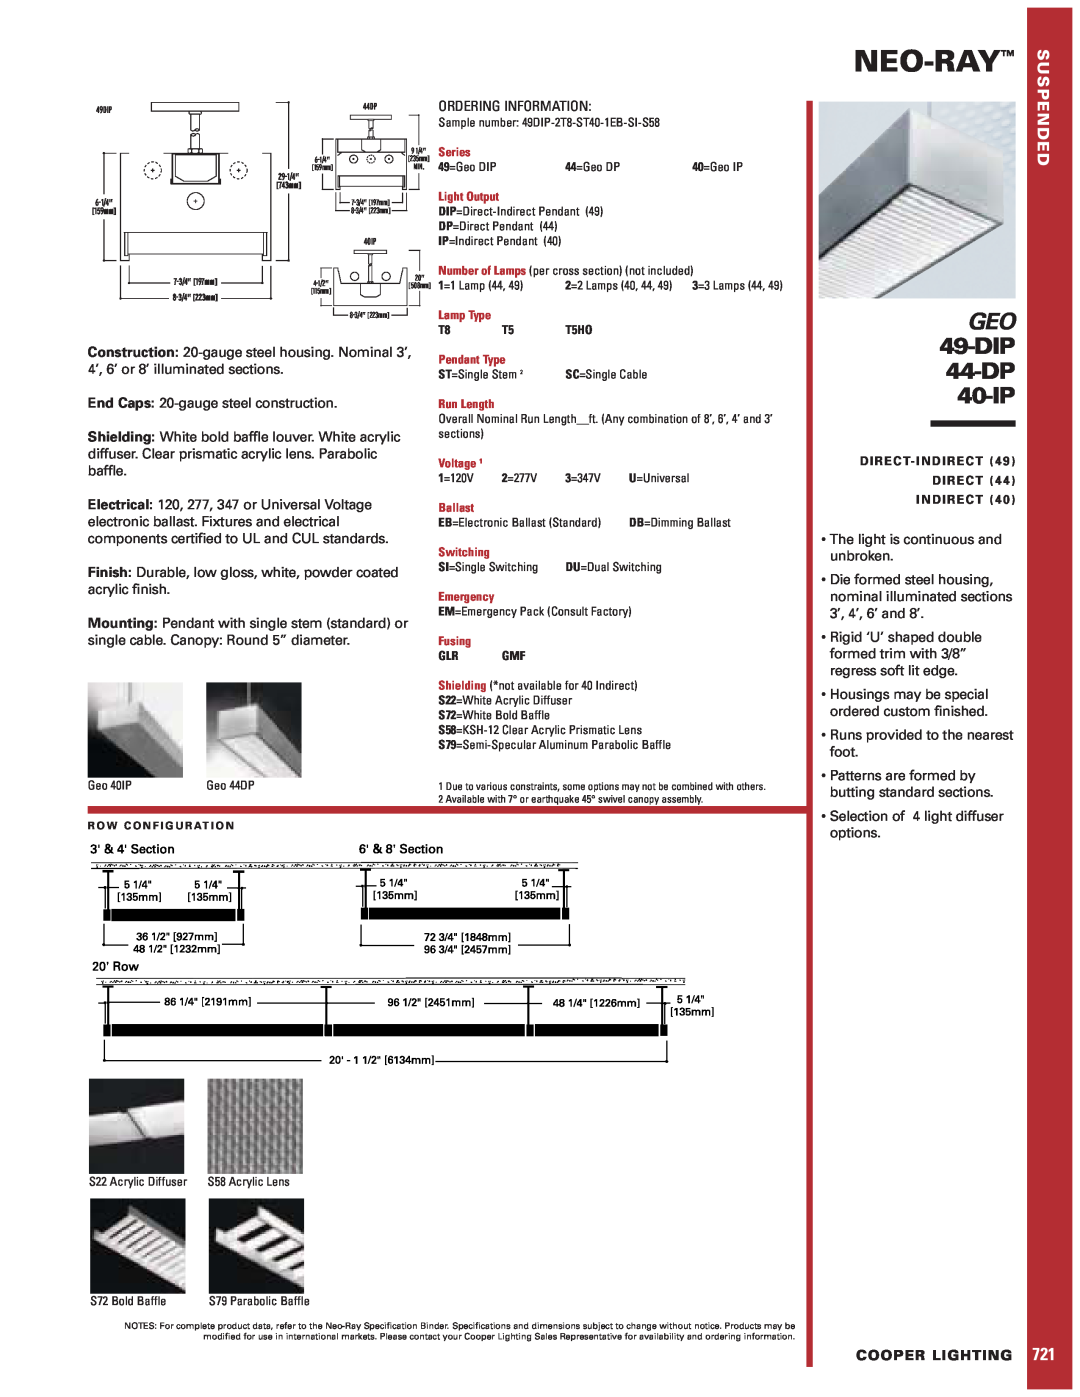 Cooper Lighting 49-DIP, GEO specifications Neo-Ray, DIP 44-DP 40-IP, Ordering Information, Cooper Lighting 